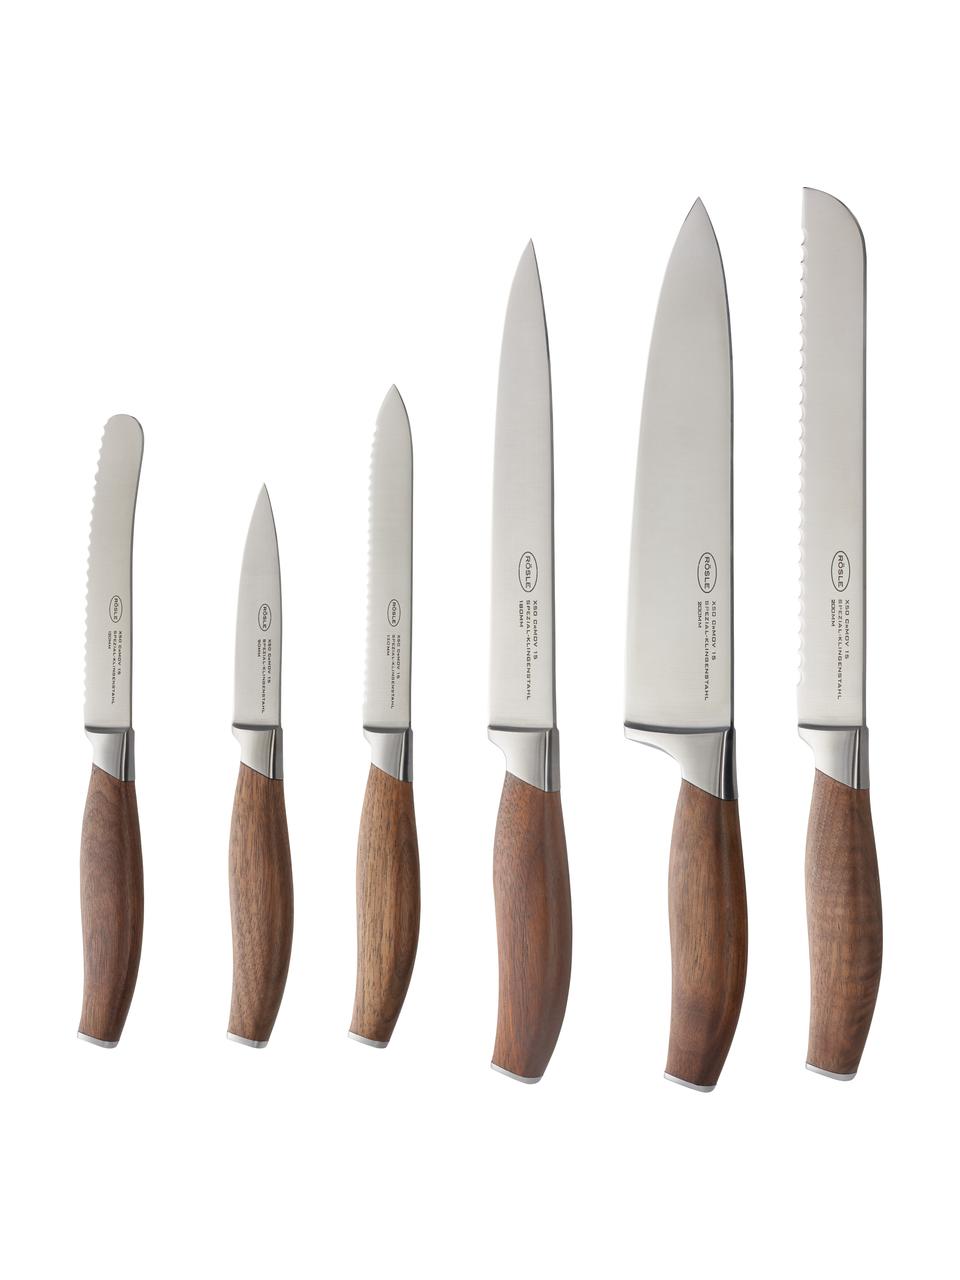 Bloc à couteaux vide Acier / Bois ORME WOOD KnifeX de chez ROSLE - Vente  articles et ustensiles de cuisine haut de gamme - Vente pièces détachées et  accessoires Electroménager sur